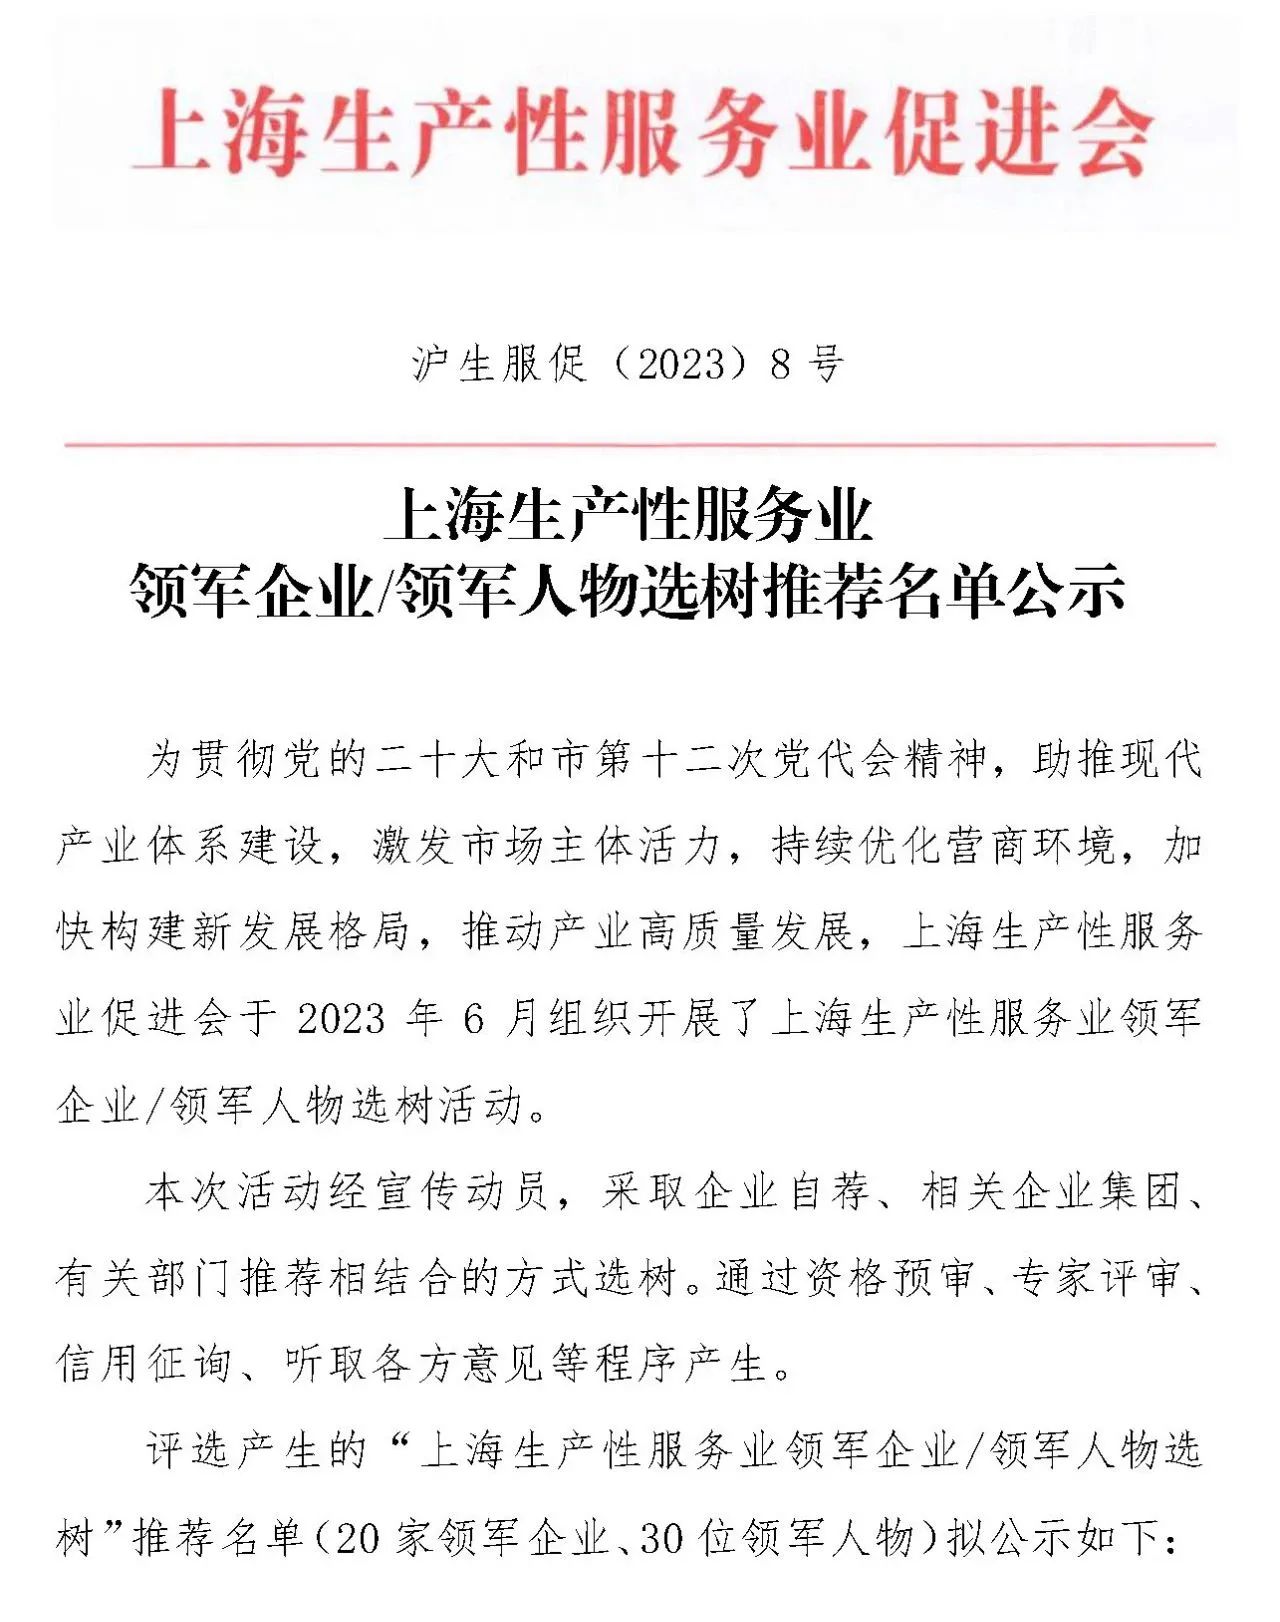 祝贺|上海新泊地成功入选生产性服务业领军企业